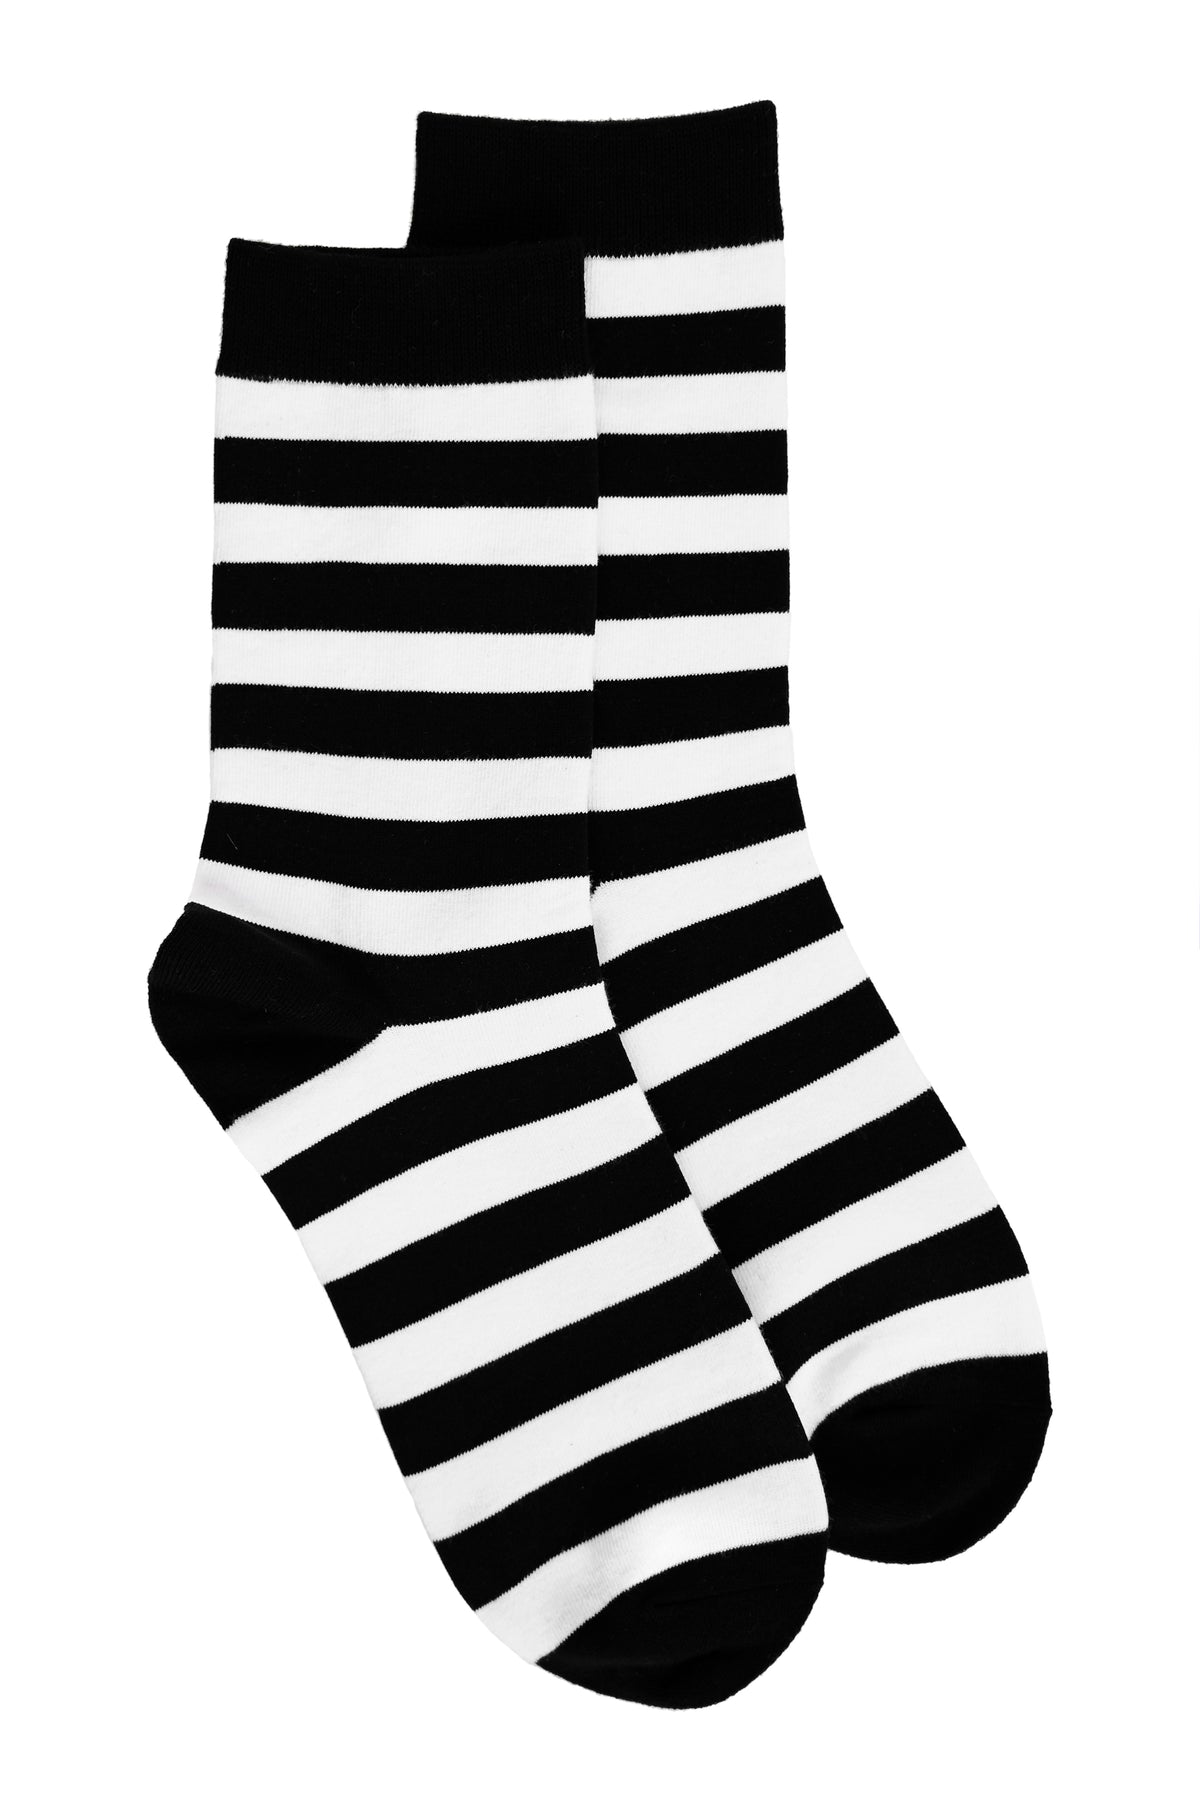 Lovett Horizontal Striped Socks – FOXBLOOD